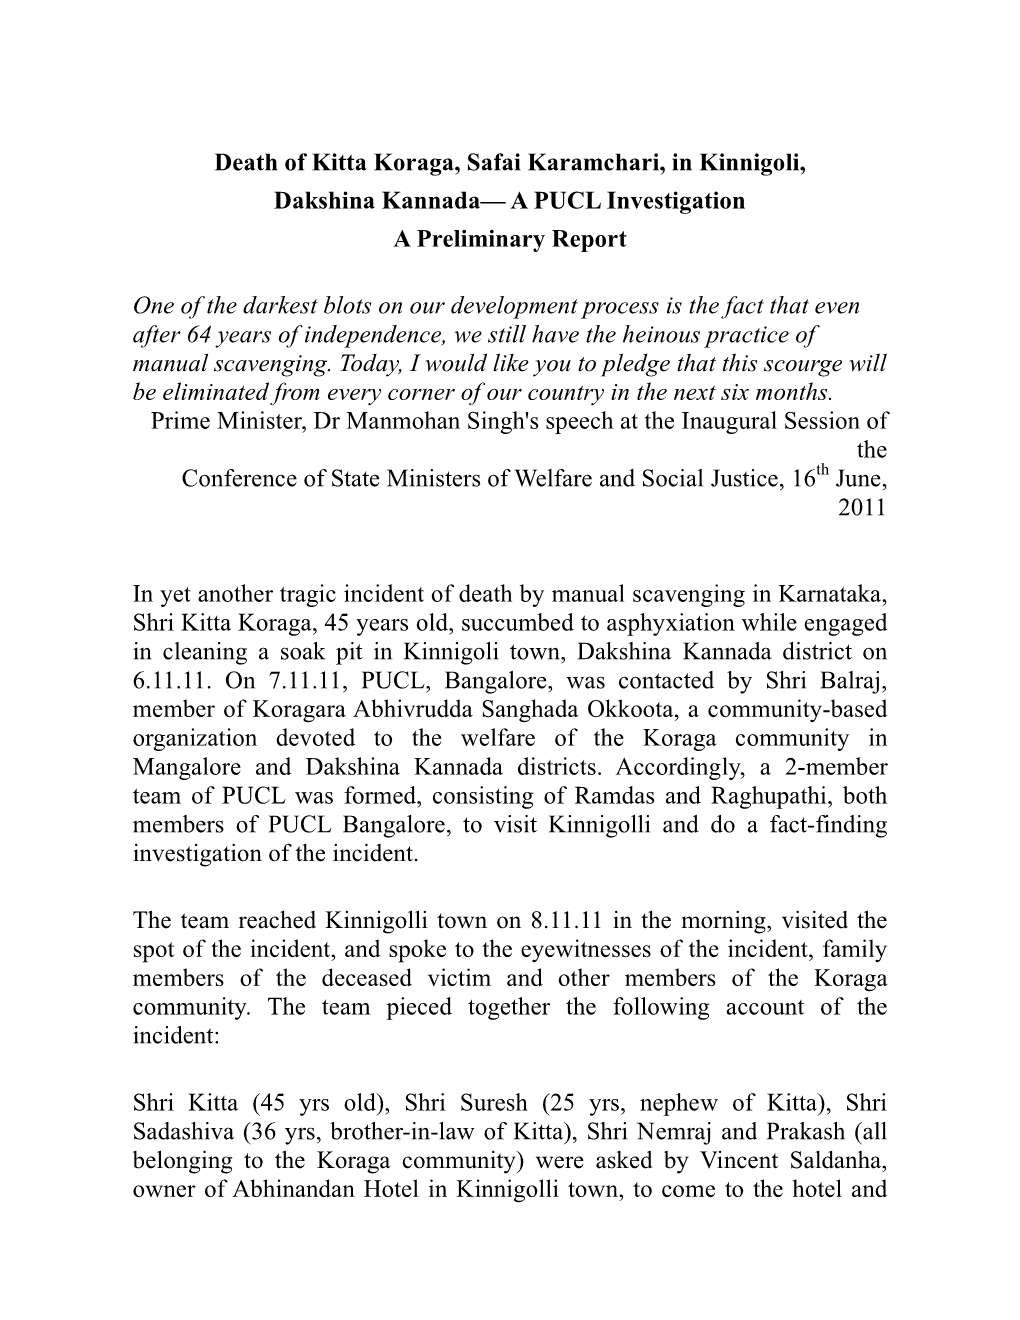 Death of Kitta Koraga, Safai Karamchari, in Kinnigoli, Dakshina Kannada— a PUCL Investigation a Preliminary Report